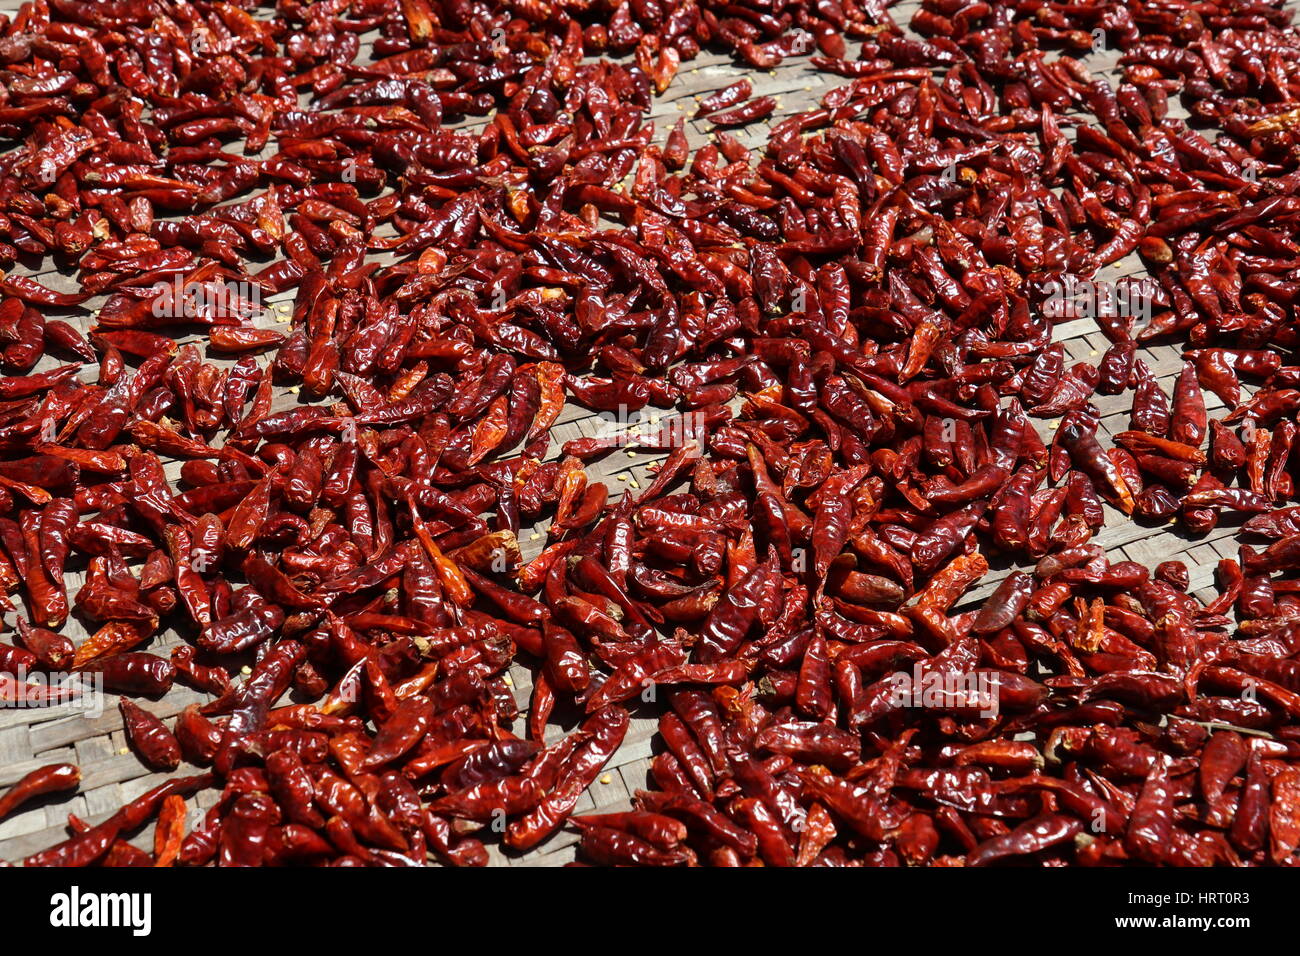 Viele rote Chilischoten in der Sonne getrocknet Stockfoto